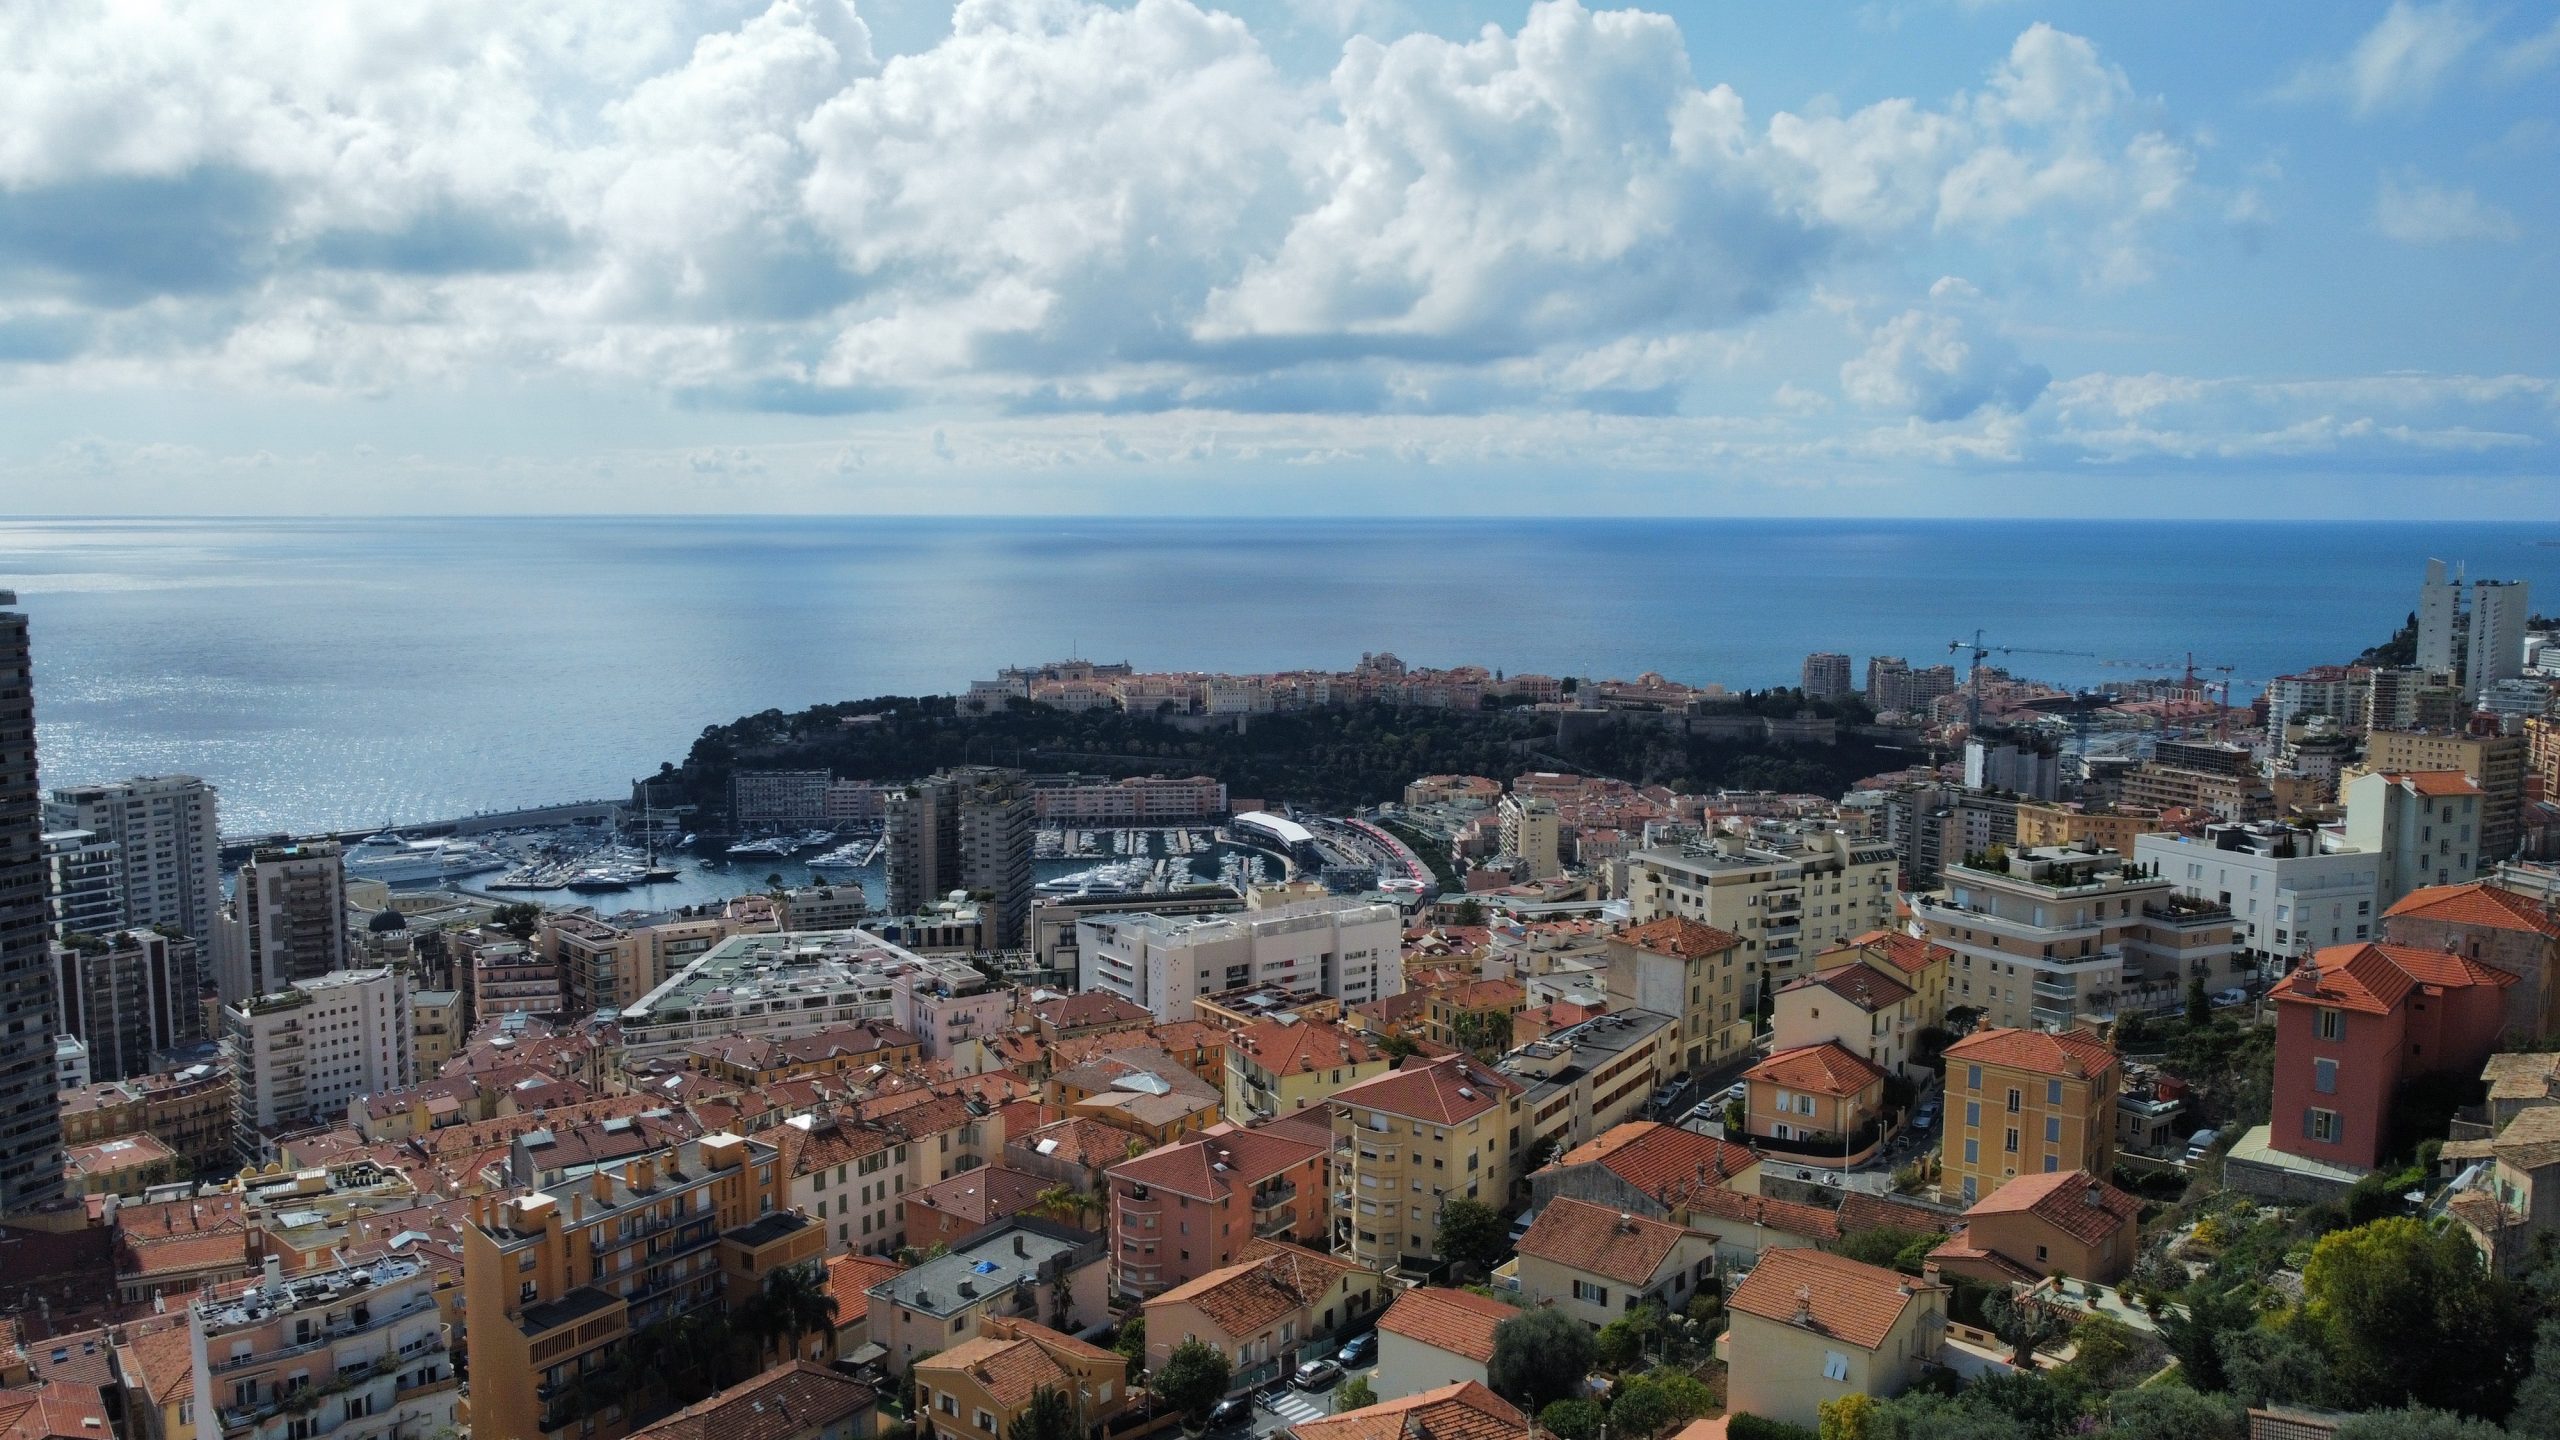 Beausoleil – Magnifique 3 pièces avec terrasse, vue panoramique sur la mer et Monaco